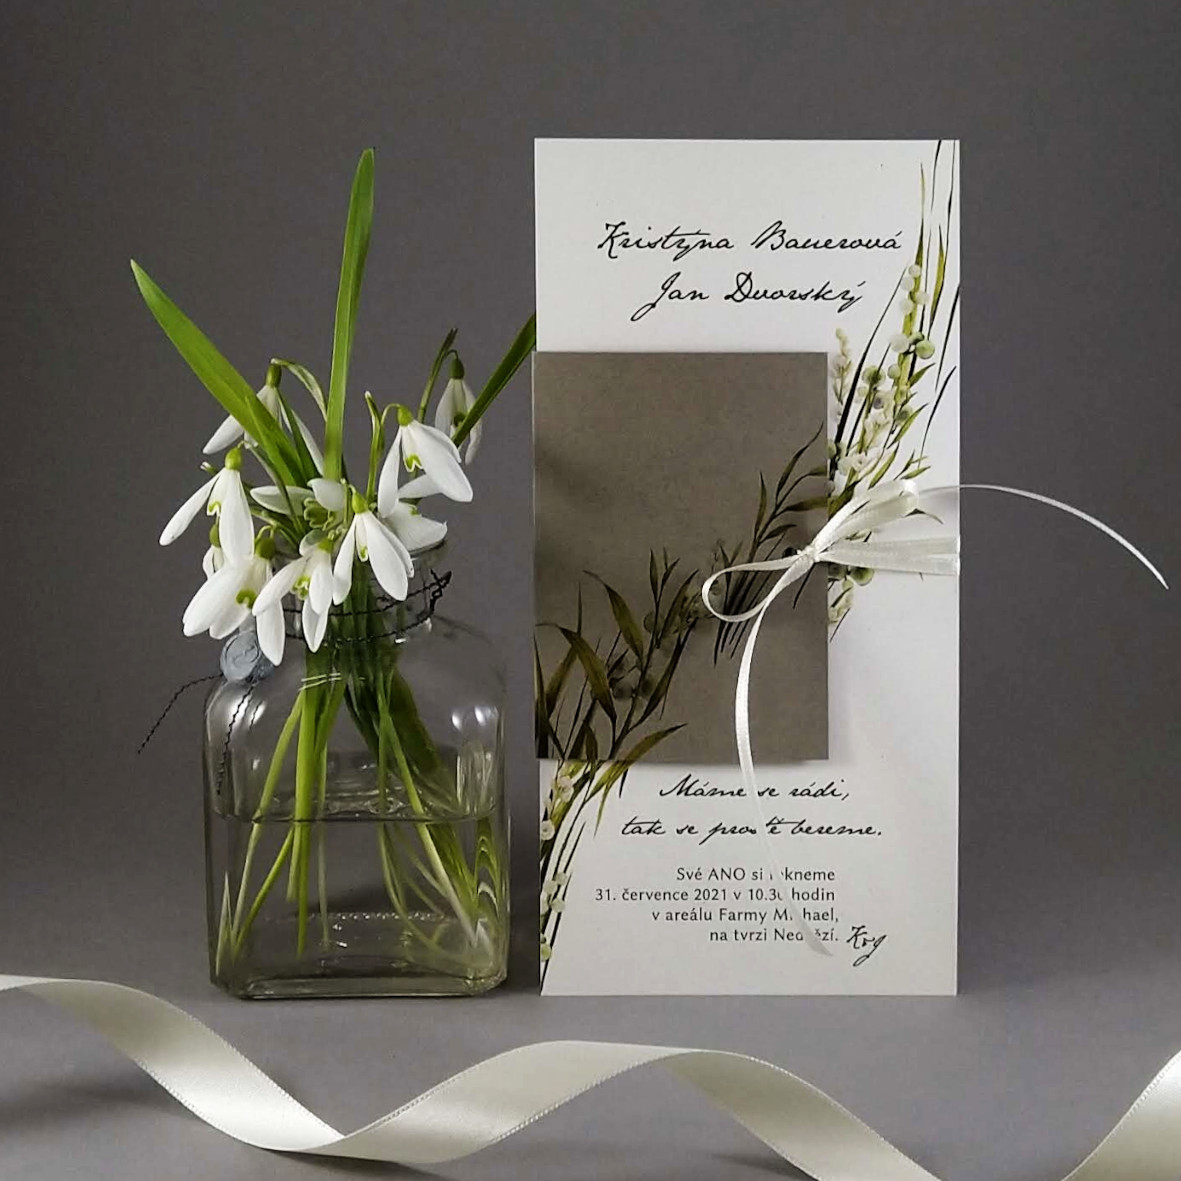 Svatební oznámení – DL karta s přebalem z ekologických papírů s příměsí kukuřice a bavlny s motivem trávy a konvalinek